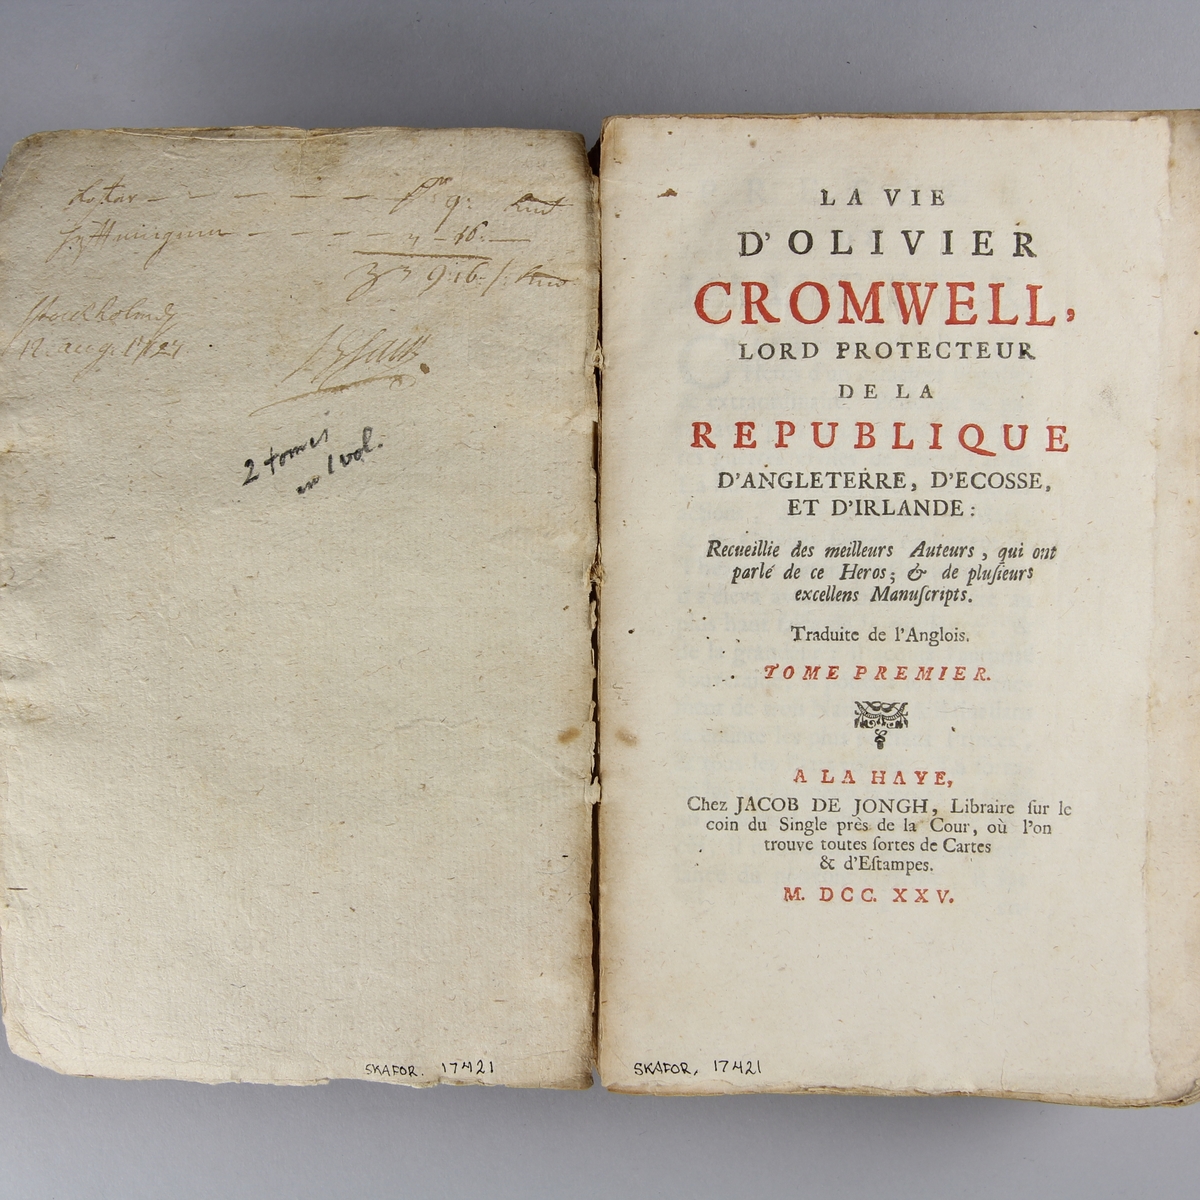 Bok, häftad, "La vie de Oliver Cromwell", del 1 och 2 i samma volym. Pärm av  marmorerat papper, oskuret snitt. Anteckning om inköp.